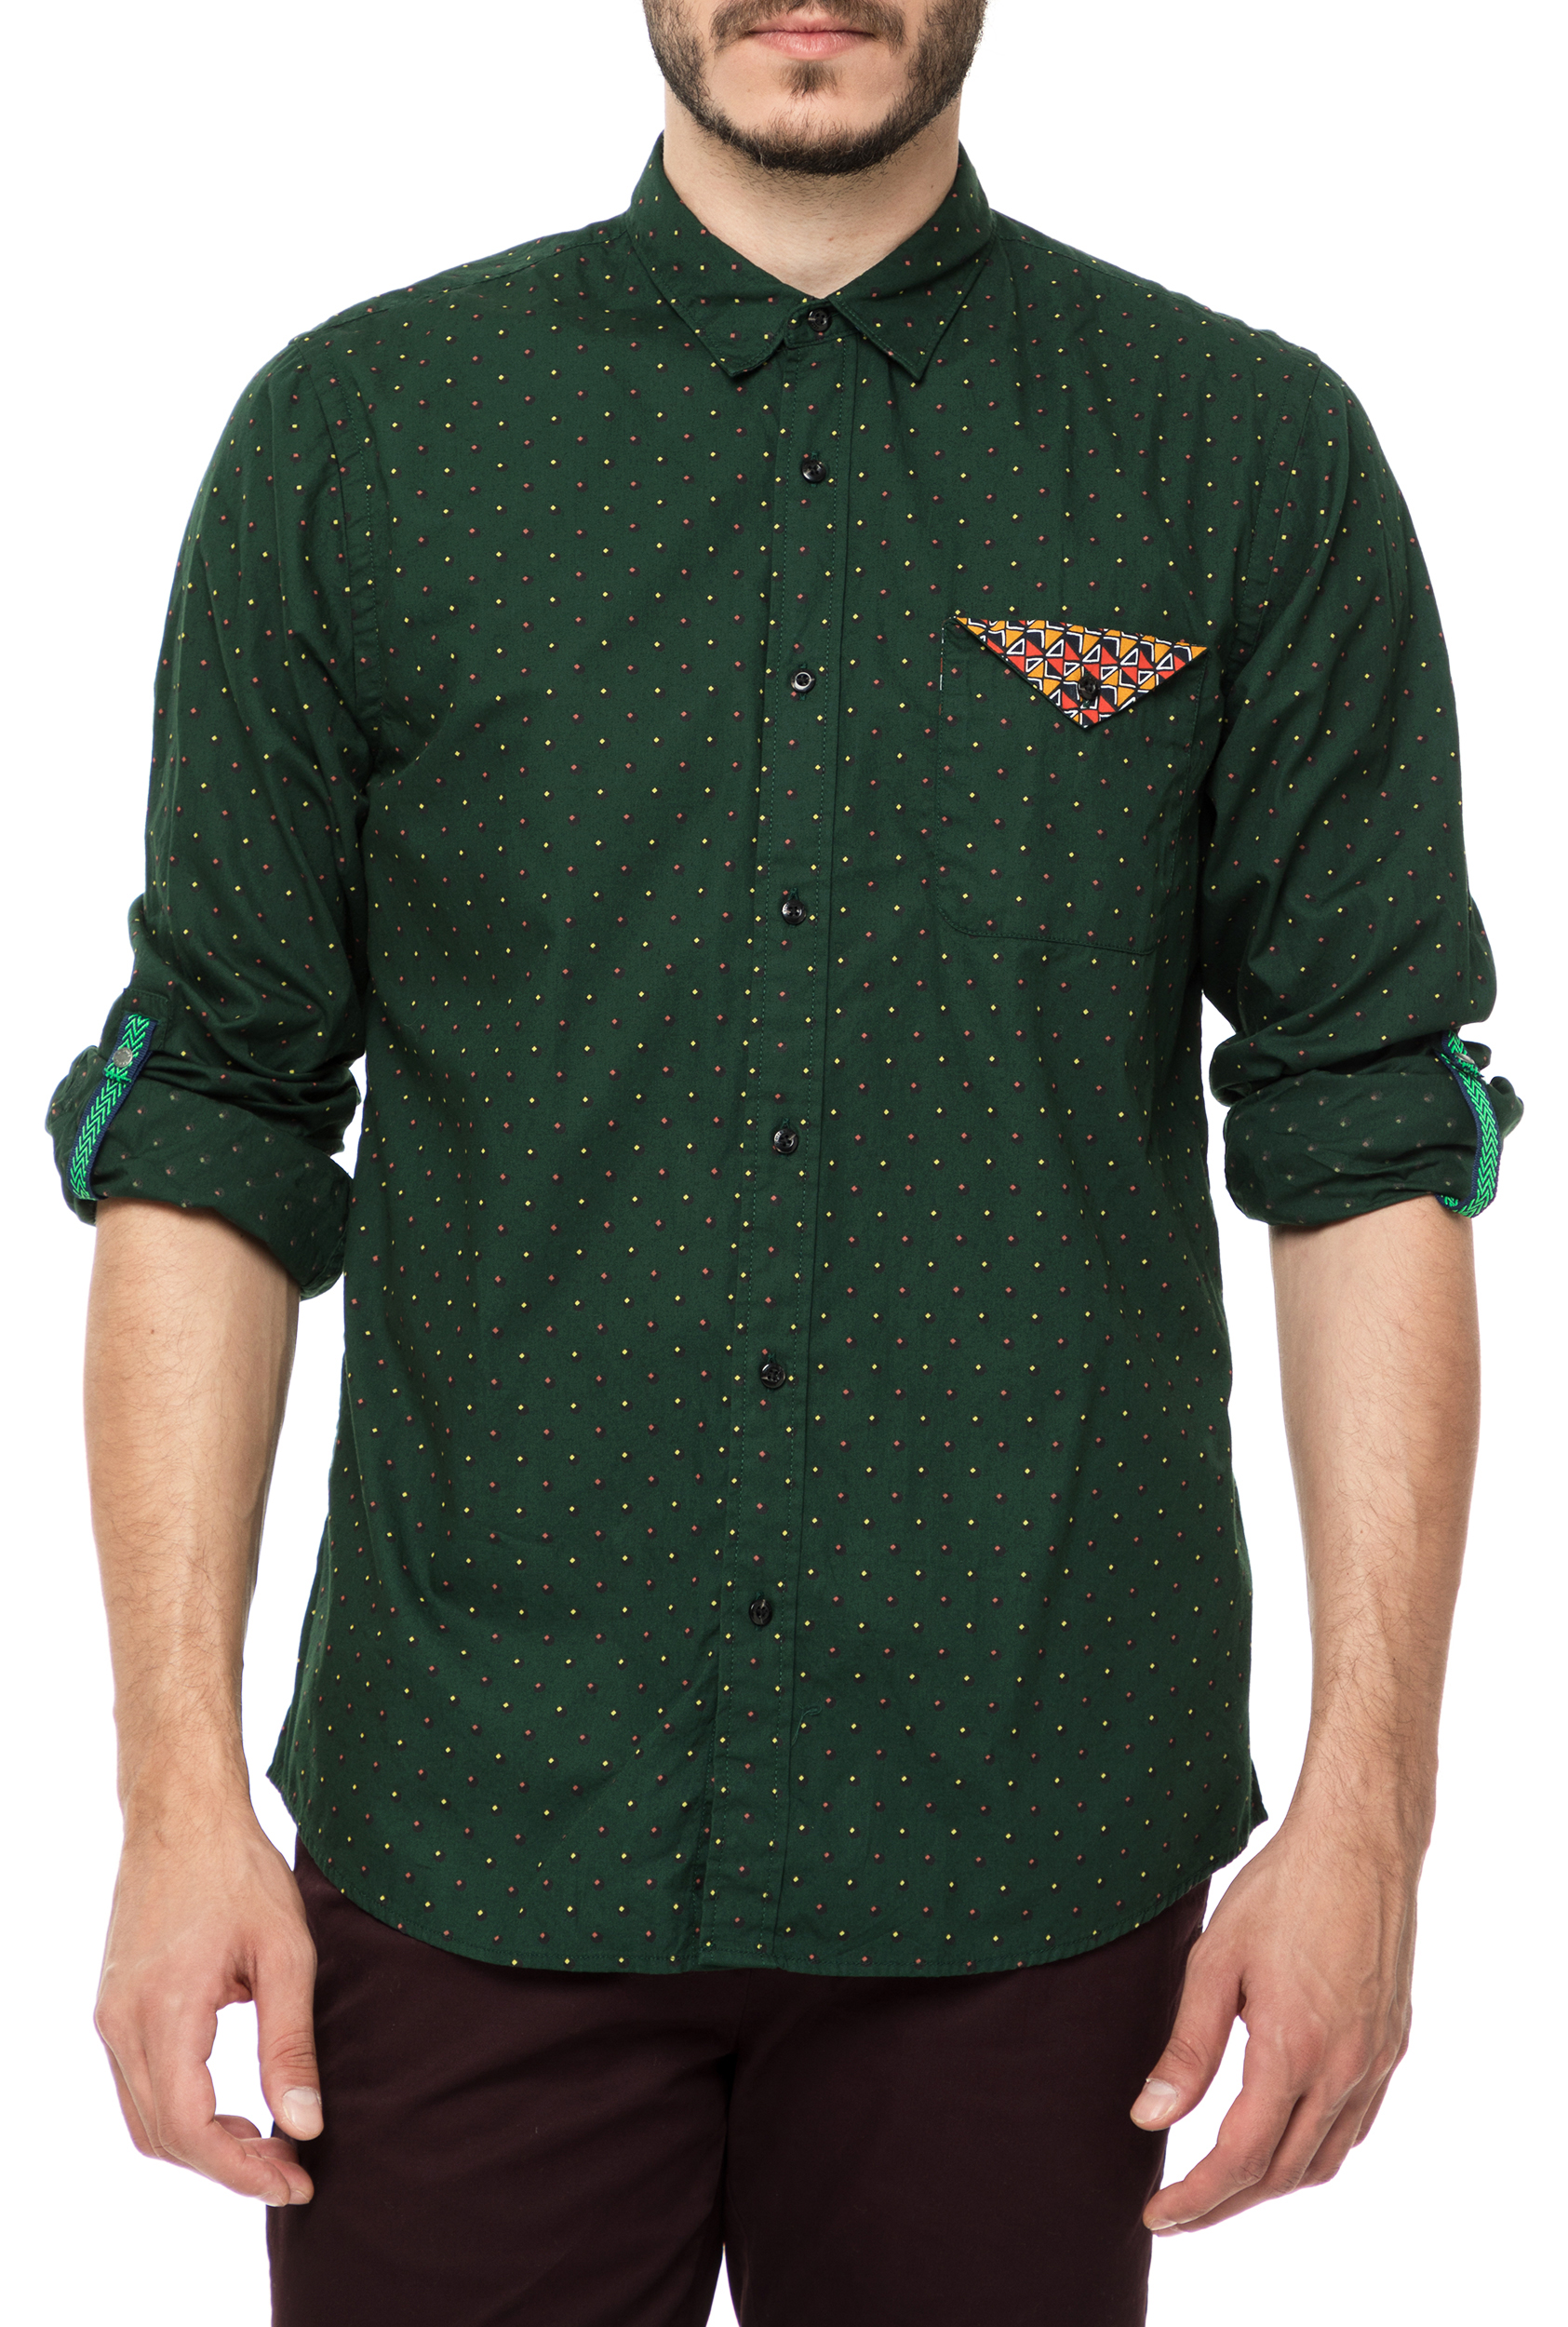 Ανδρικά/Ρούχα/Πουκάμισα/Μακρυμάνικα SCOTCH & SODA - Ανδρικό μαικρυμάνικο πουκάμισο SCOTCH & SODA πράσινο